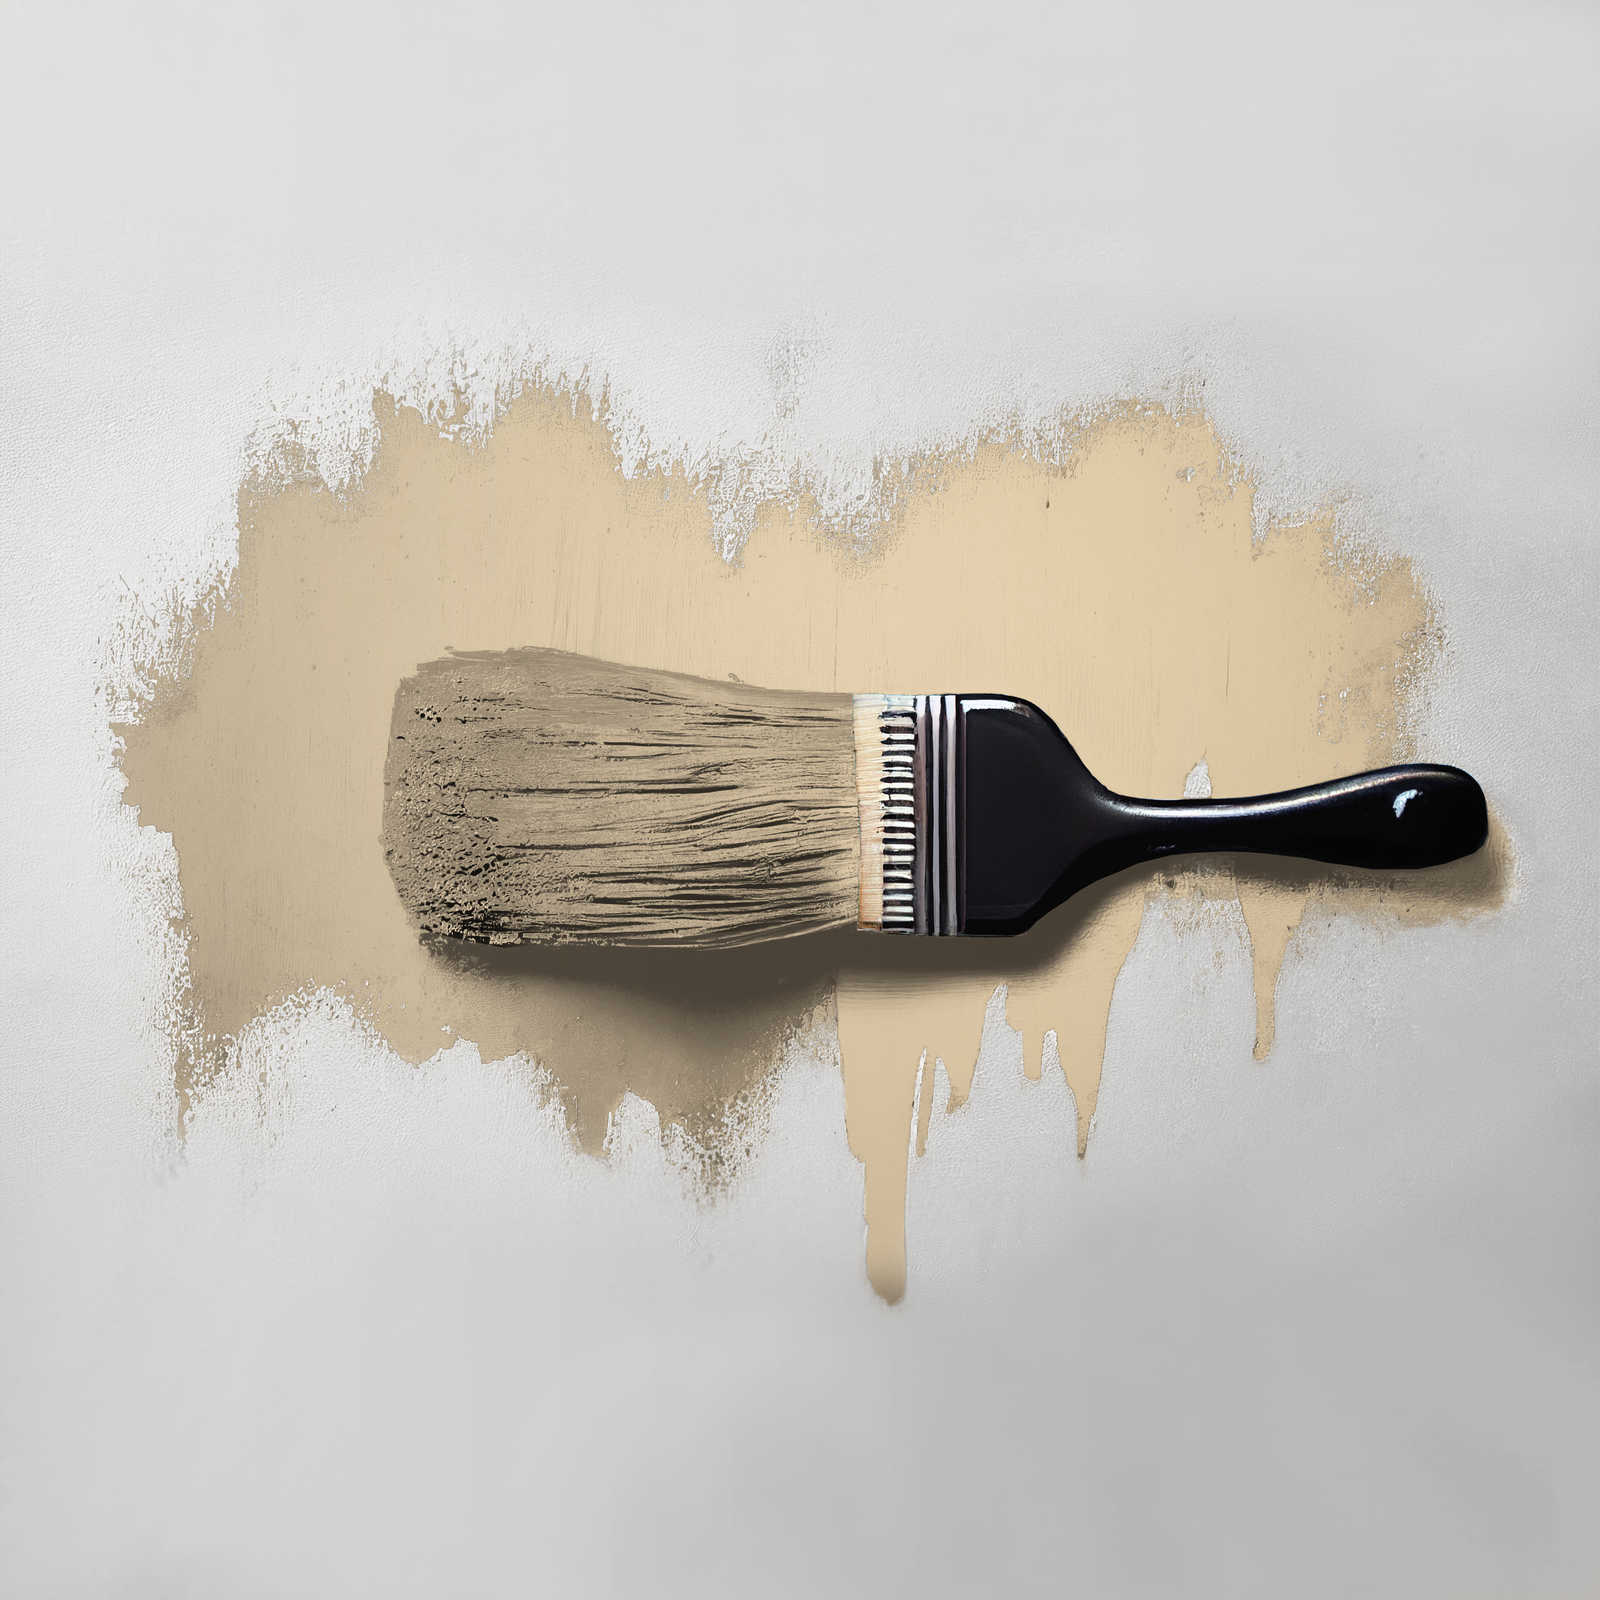             Wall Paint TCK6003 »Asthetic Artichoke« in homely beige – 5.0 litre
        